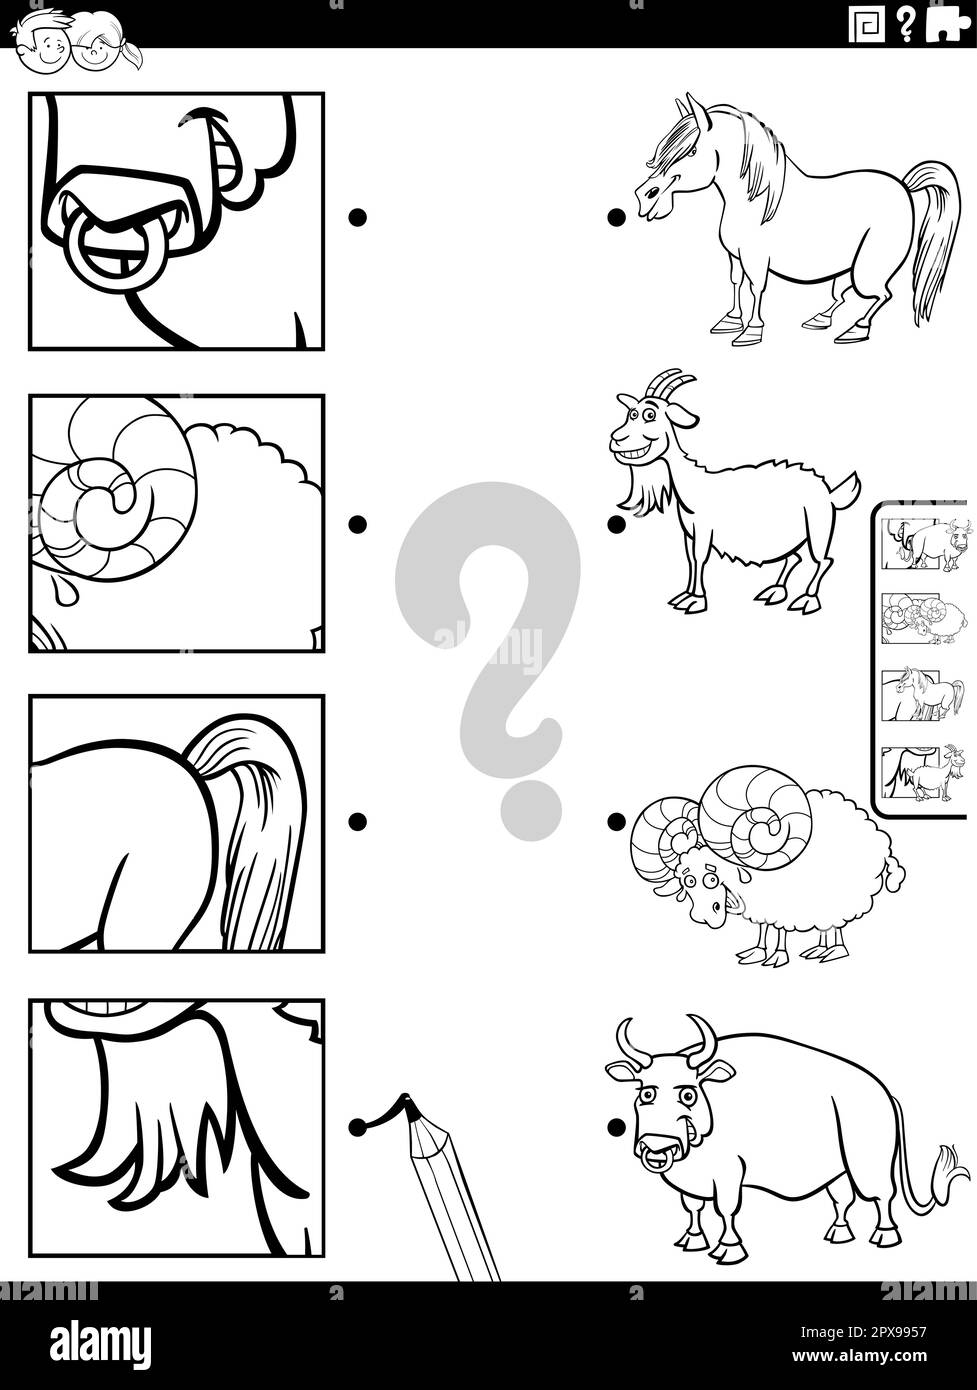 Dessin animé noir et blanc illustration du jeu éducatif correspondant avec des personnages d'animaux de ferme et des images coupures page de coloriage Illustration de Vecteur